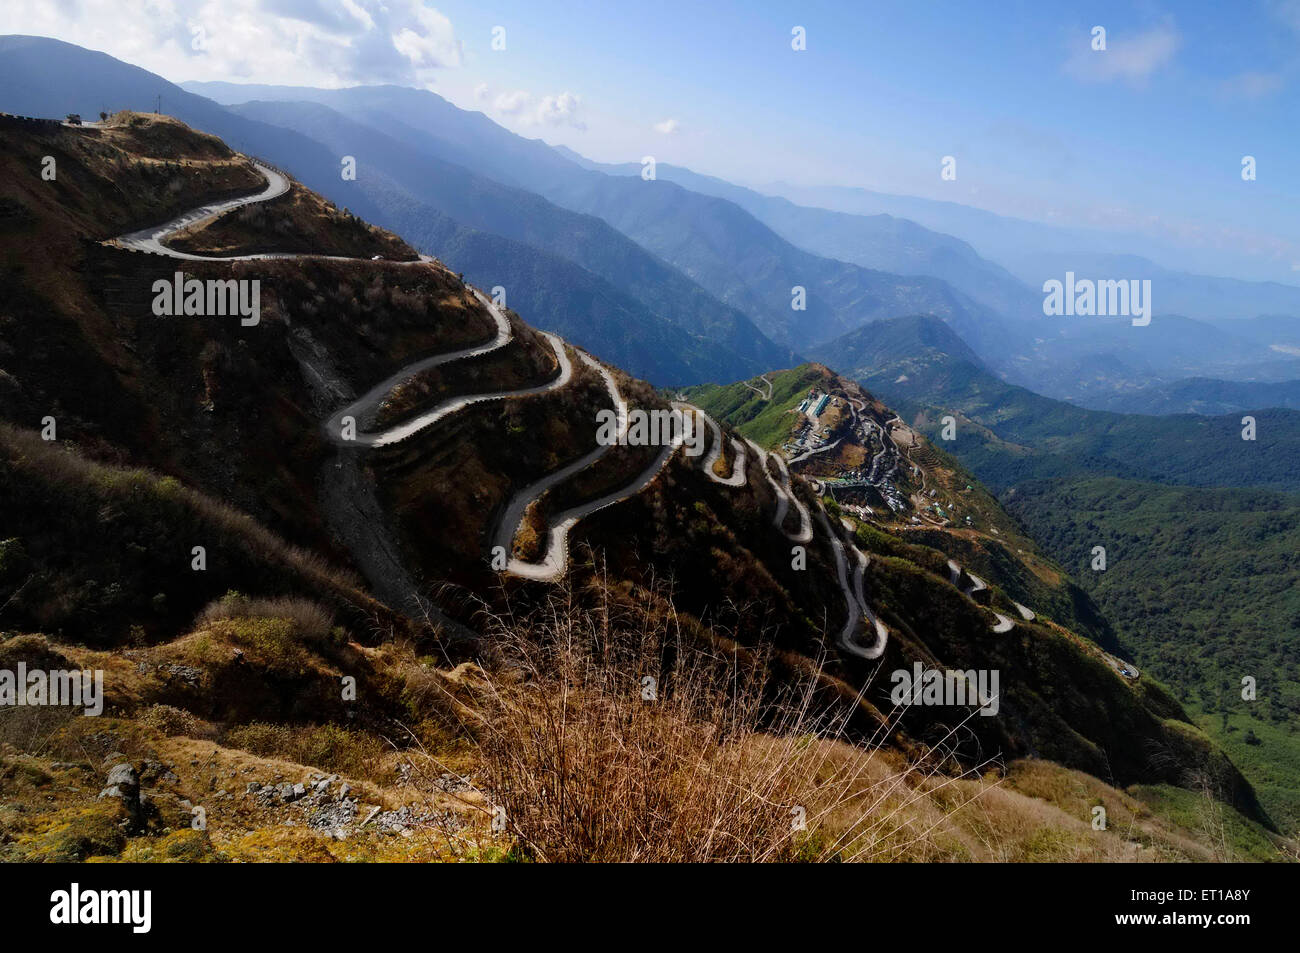 Curvy Road Old Silk route entre l'Inde et la Chine Sikkim Inde Asie Indien asiatique Banque D'Images